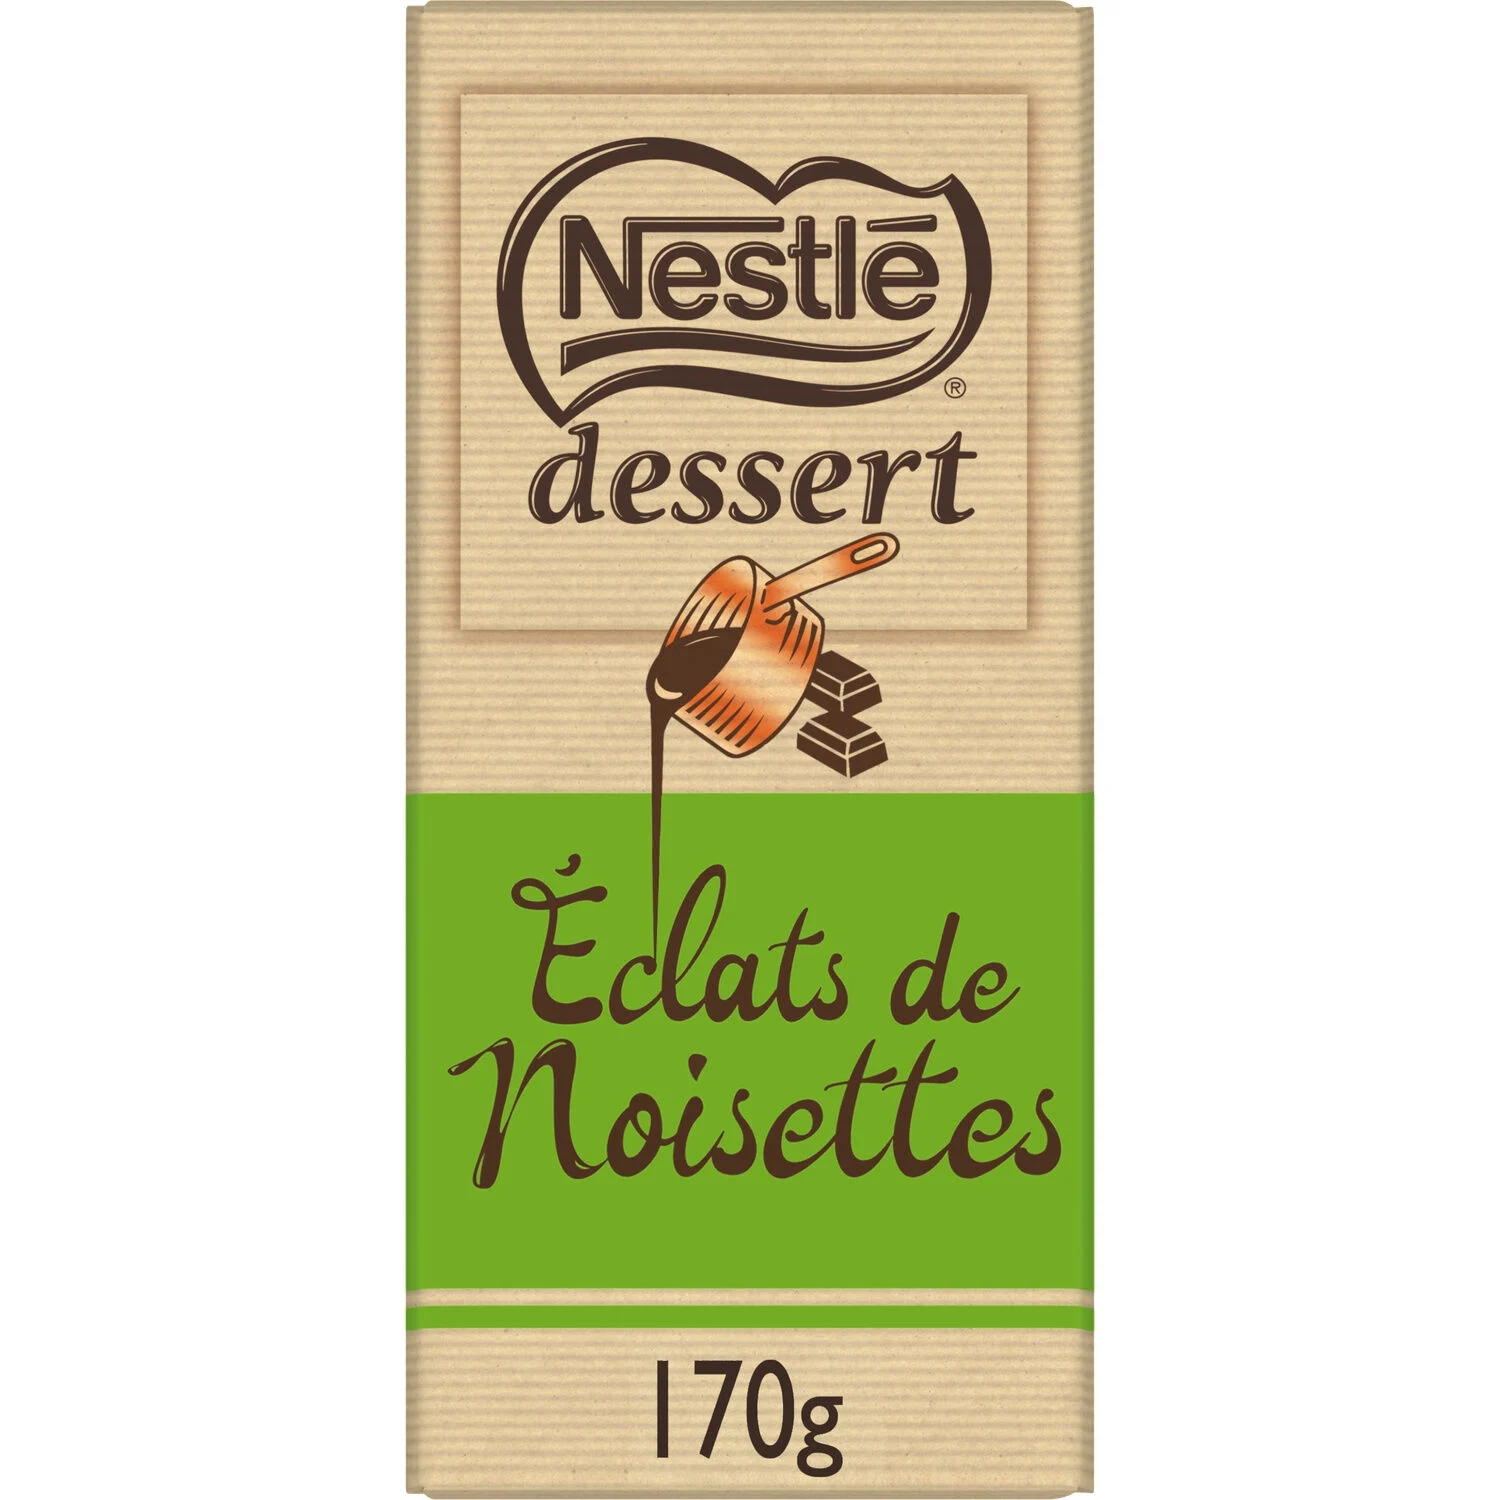 Nestl Dessert Nr Noisettes 170